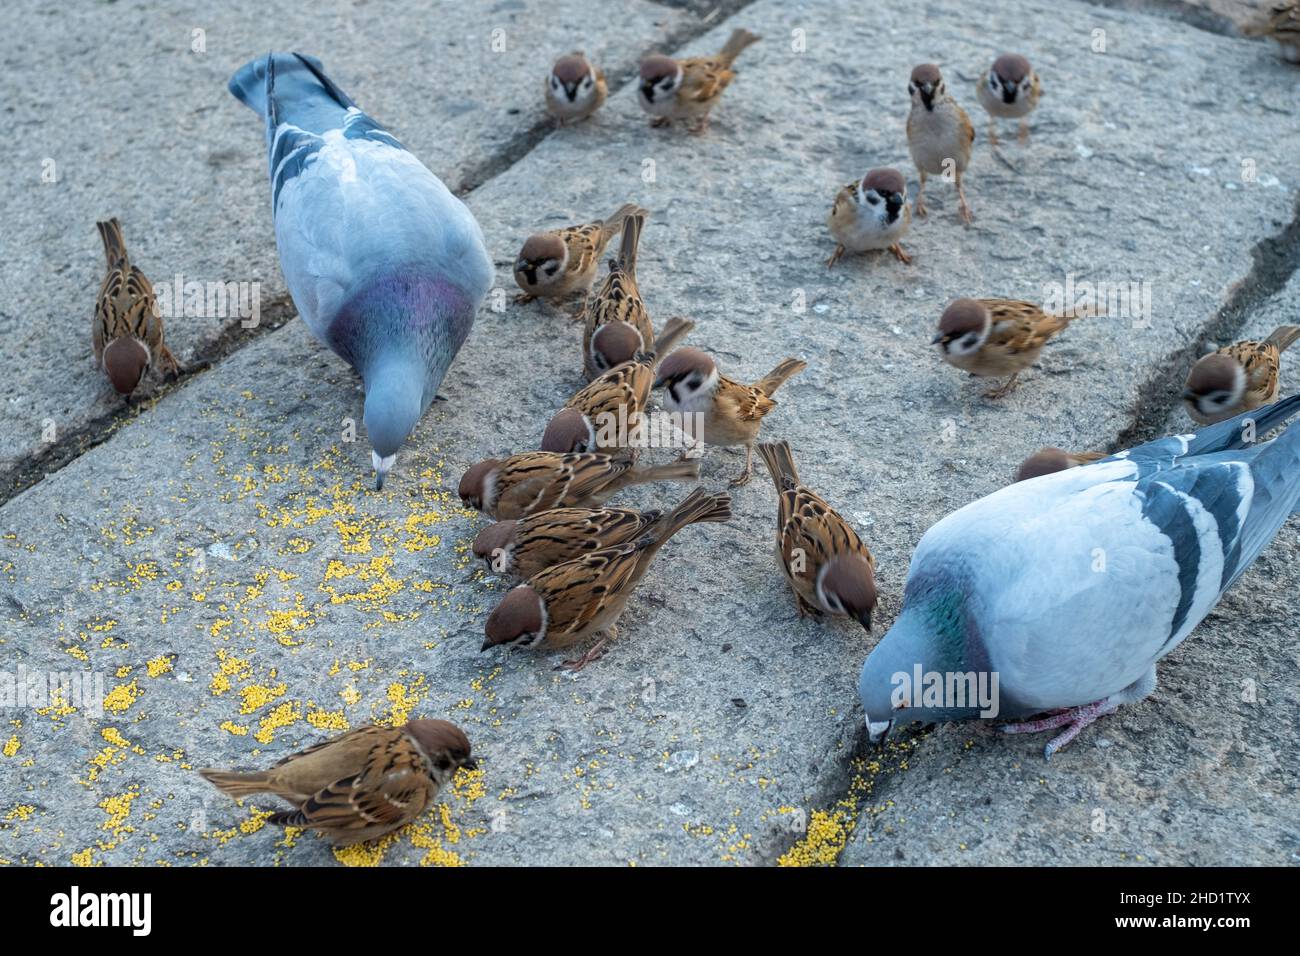 Un grupo de gorriones y palomas comen juntos en un lugar turístico en Beijing, China. Foto de stock